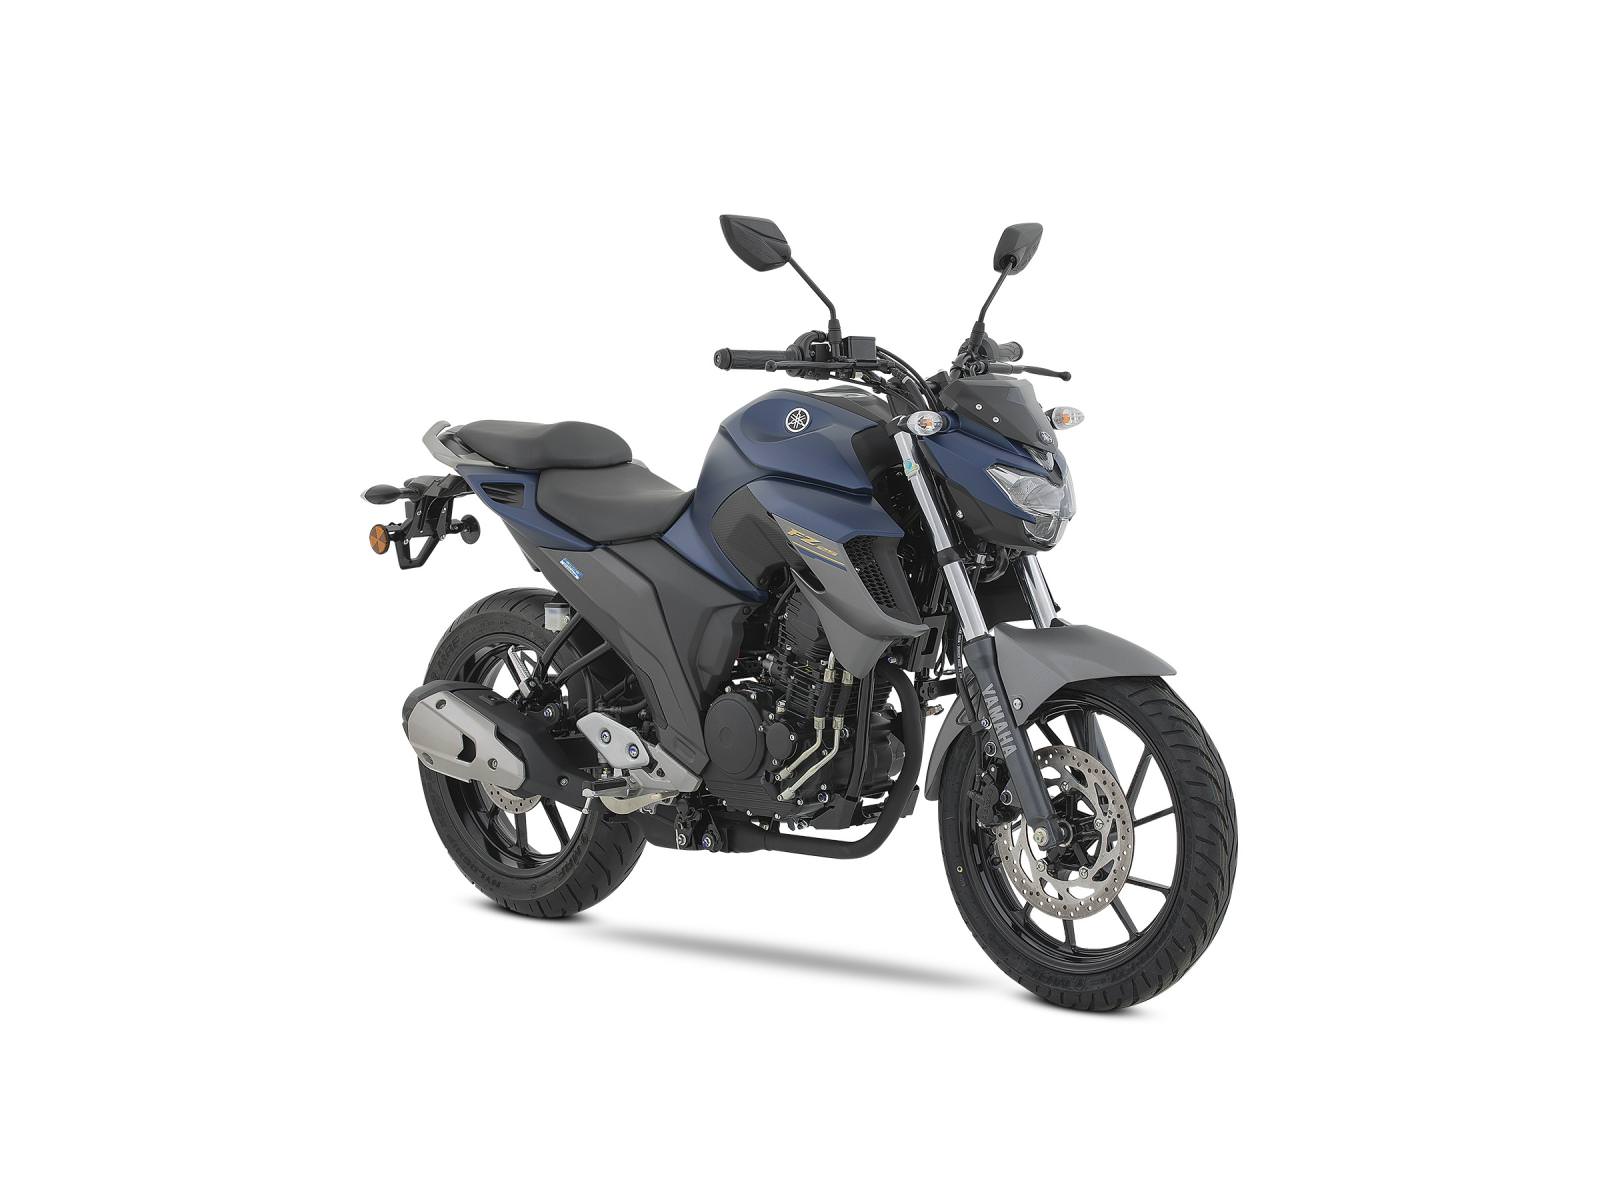 Moto Yamaha Fz 150 Modelo 2020 : Yamaha FZ-S FI 150 2020 - yuhmak ...